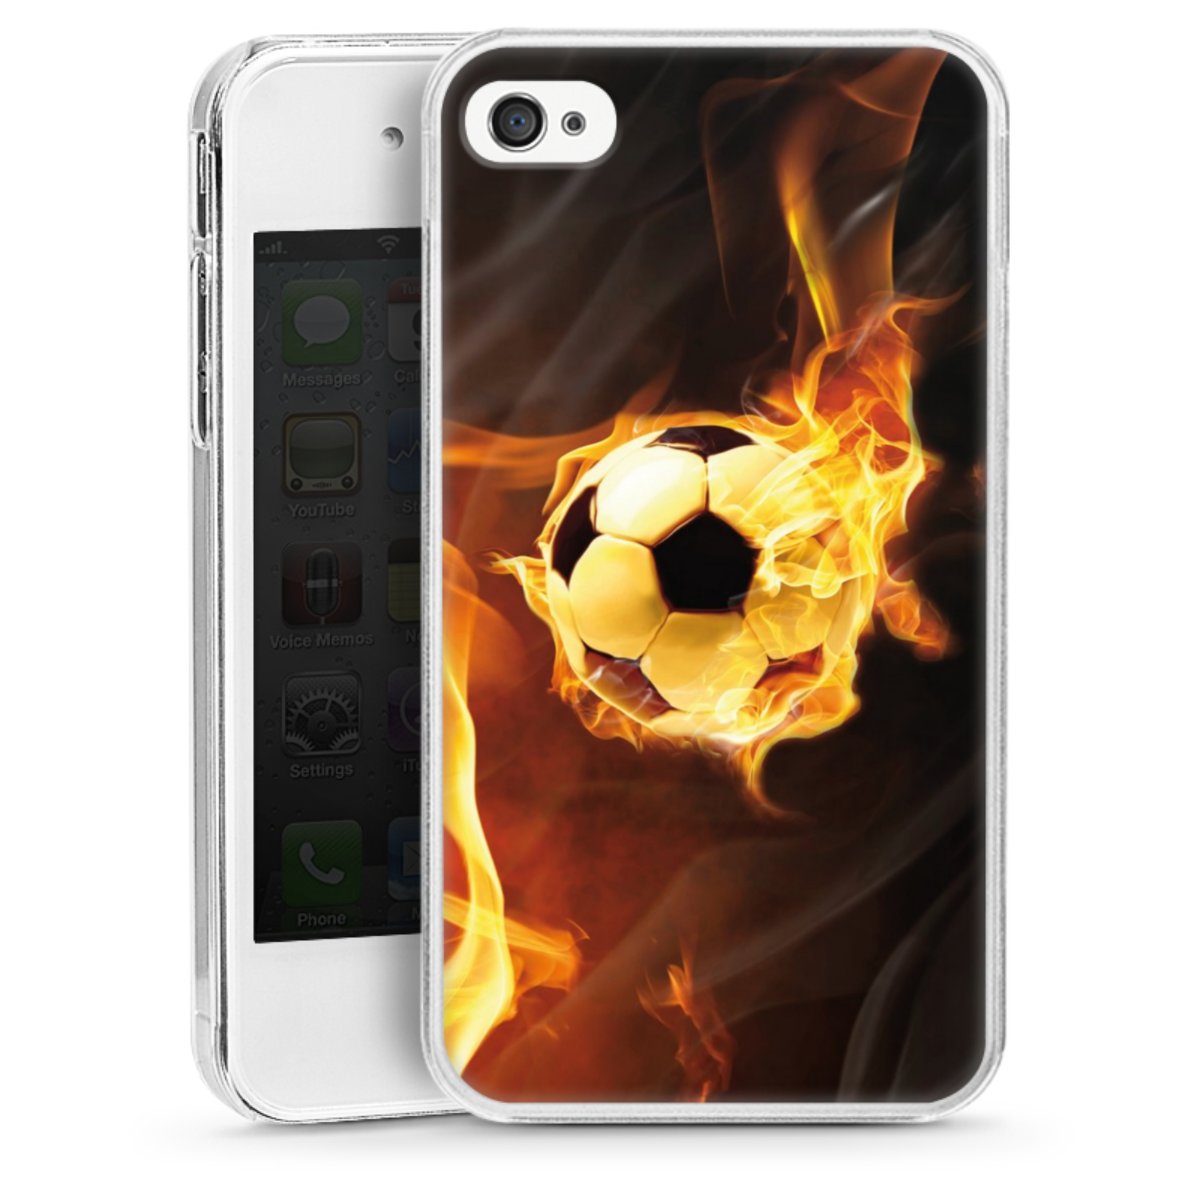 Compatibel met middernacht puppy Burning Soccer voor Hardcase hoesje (transparant) voor Apple iPhone 4s van  DeinDesign